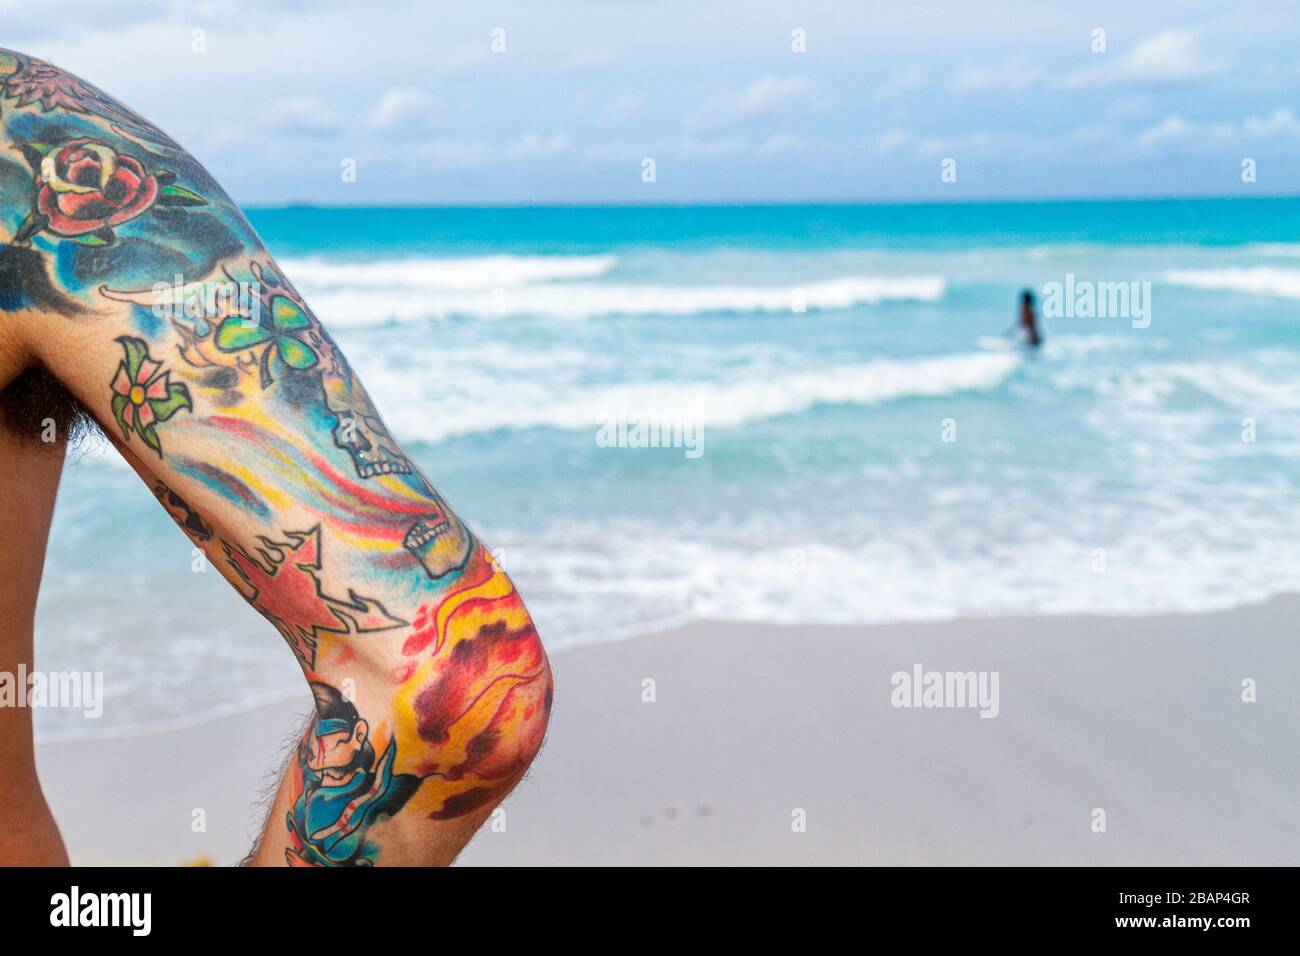 Miami Beach Florida,Océan Atlantique,eau,rivage,surf,homme hommes adultes,bras,tatouage,tatouages,coloré,vagues,eau,FL110611012 Banque D'Images